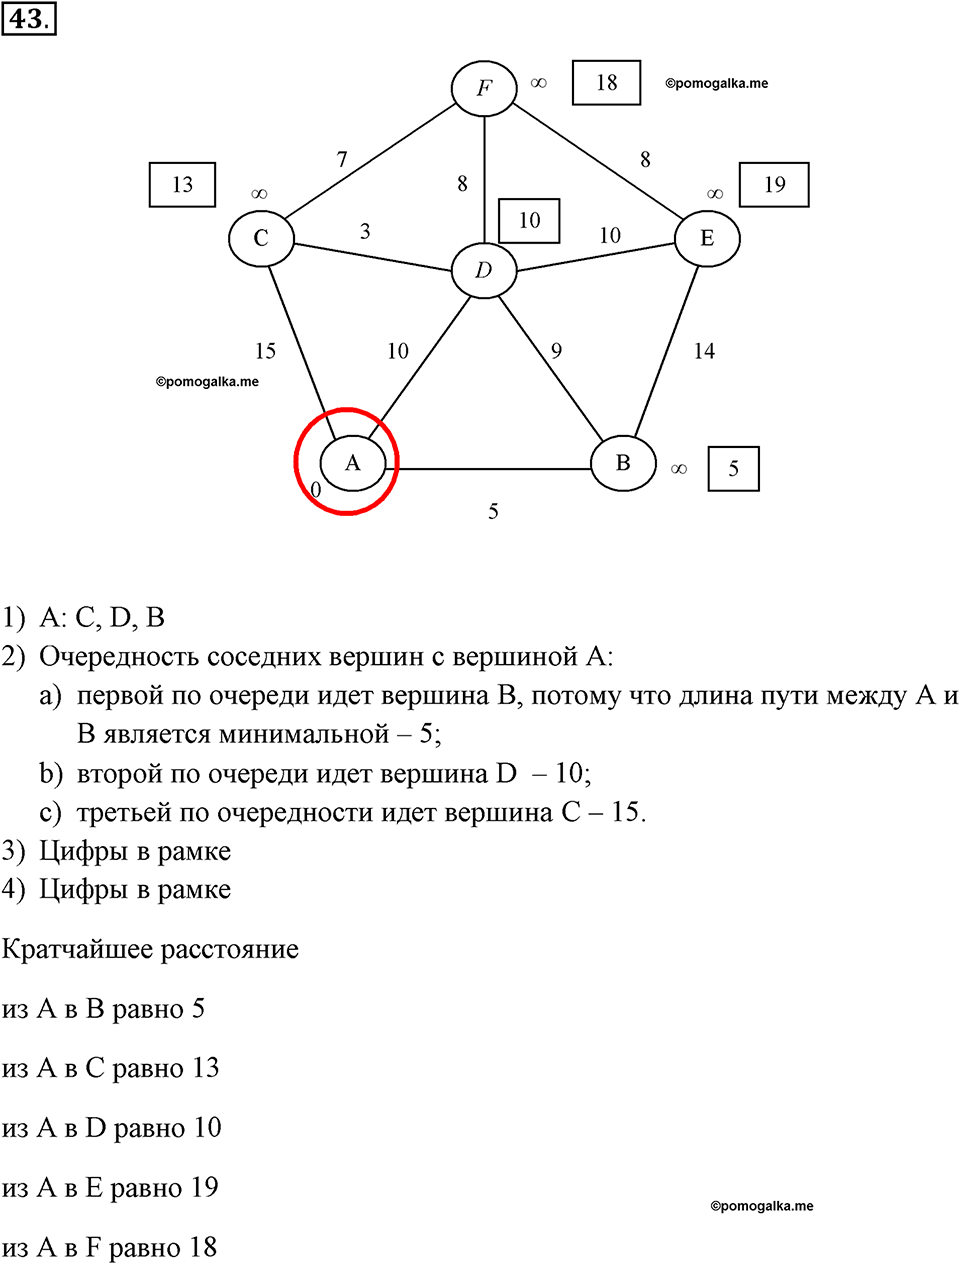 задача №43 рабочая тетрадь по информатике 9 класс Босова